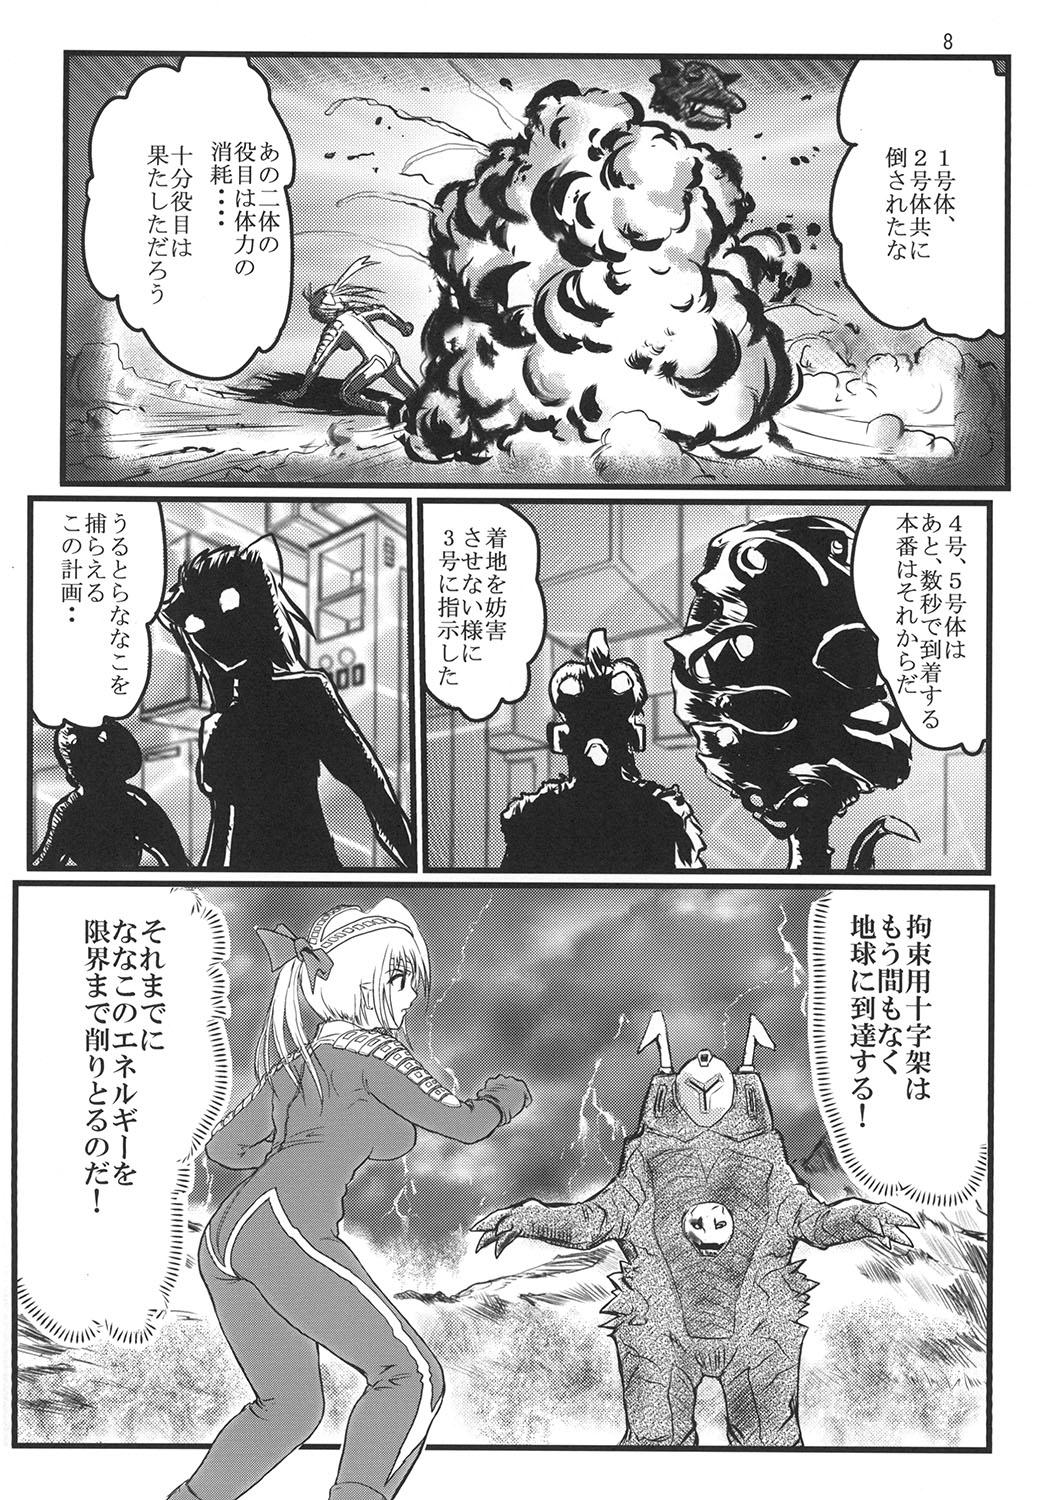 Pau Ultra Nanako Zettaizetsumei! - Ultraman Ex Gf - Page 8